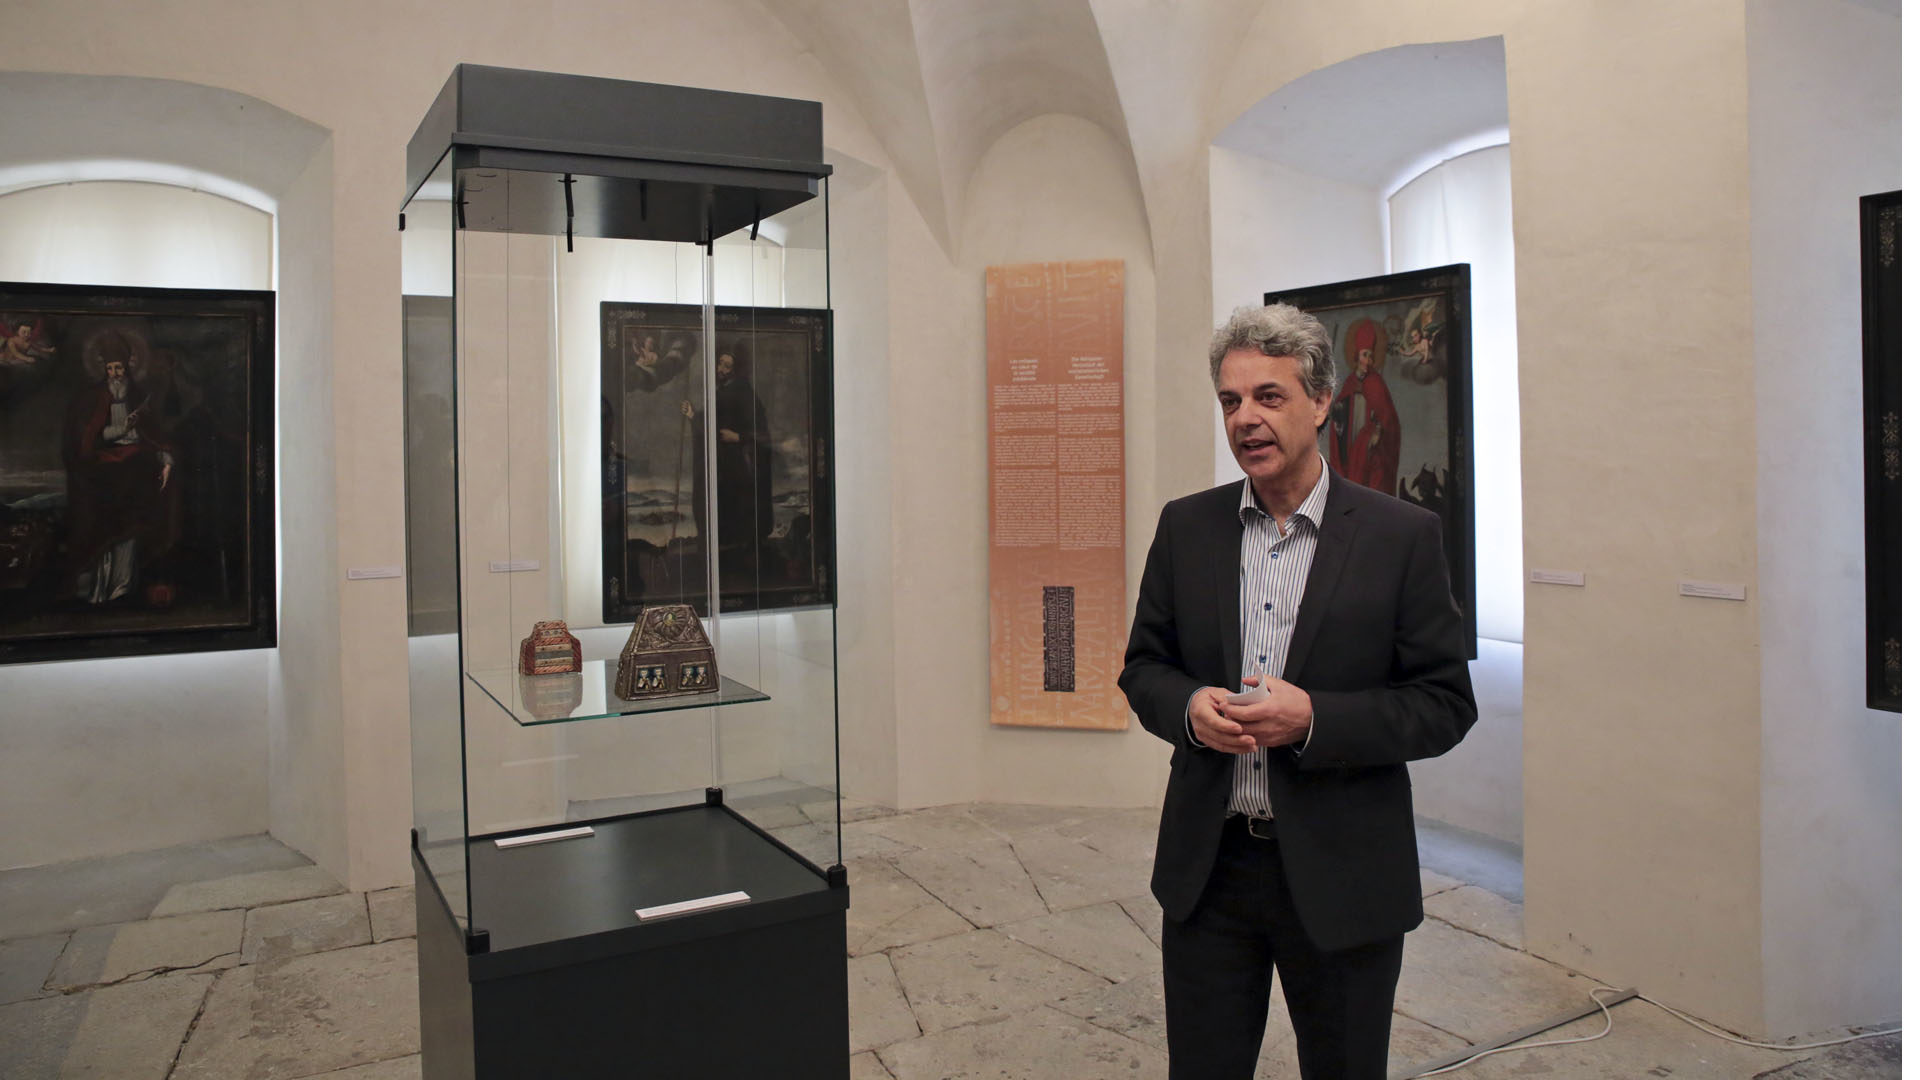 Sion le 21 mars 2017. Patrick Elsig, le directeur du Musée d'histoire du Valais décrit les objets exposés. Dans la vitrine un reliquaire du 8e siècle. (Photo: B. Hallet)